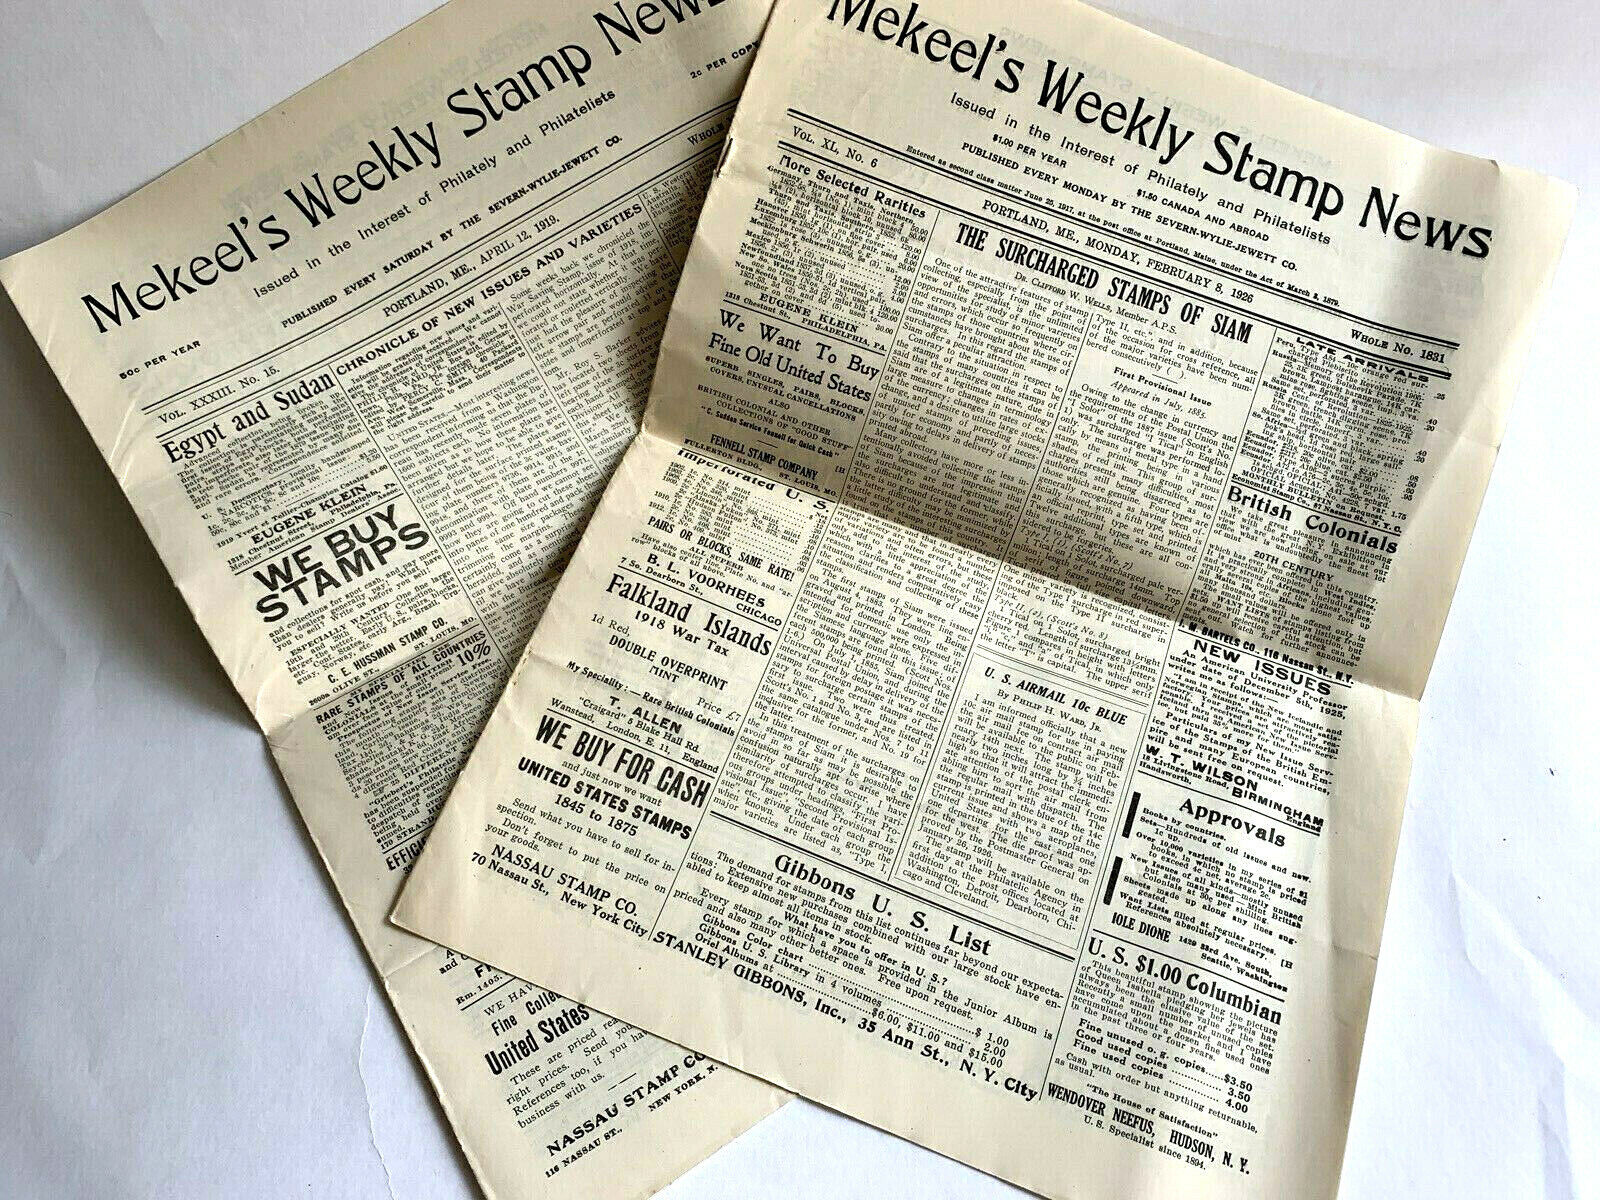 Vintage Philatetic News, 2 Mekeel's Weekly Stamp News April 12 1919 & Feb 8 1926 Mekeel's